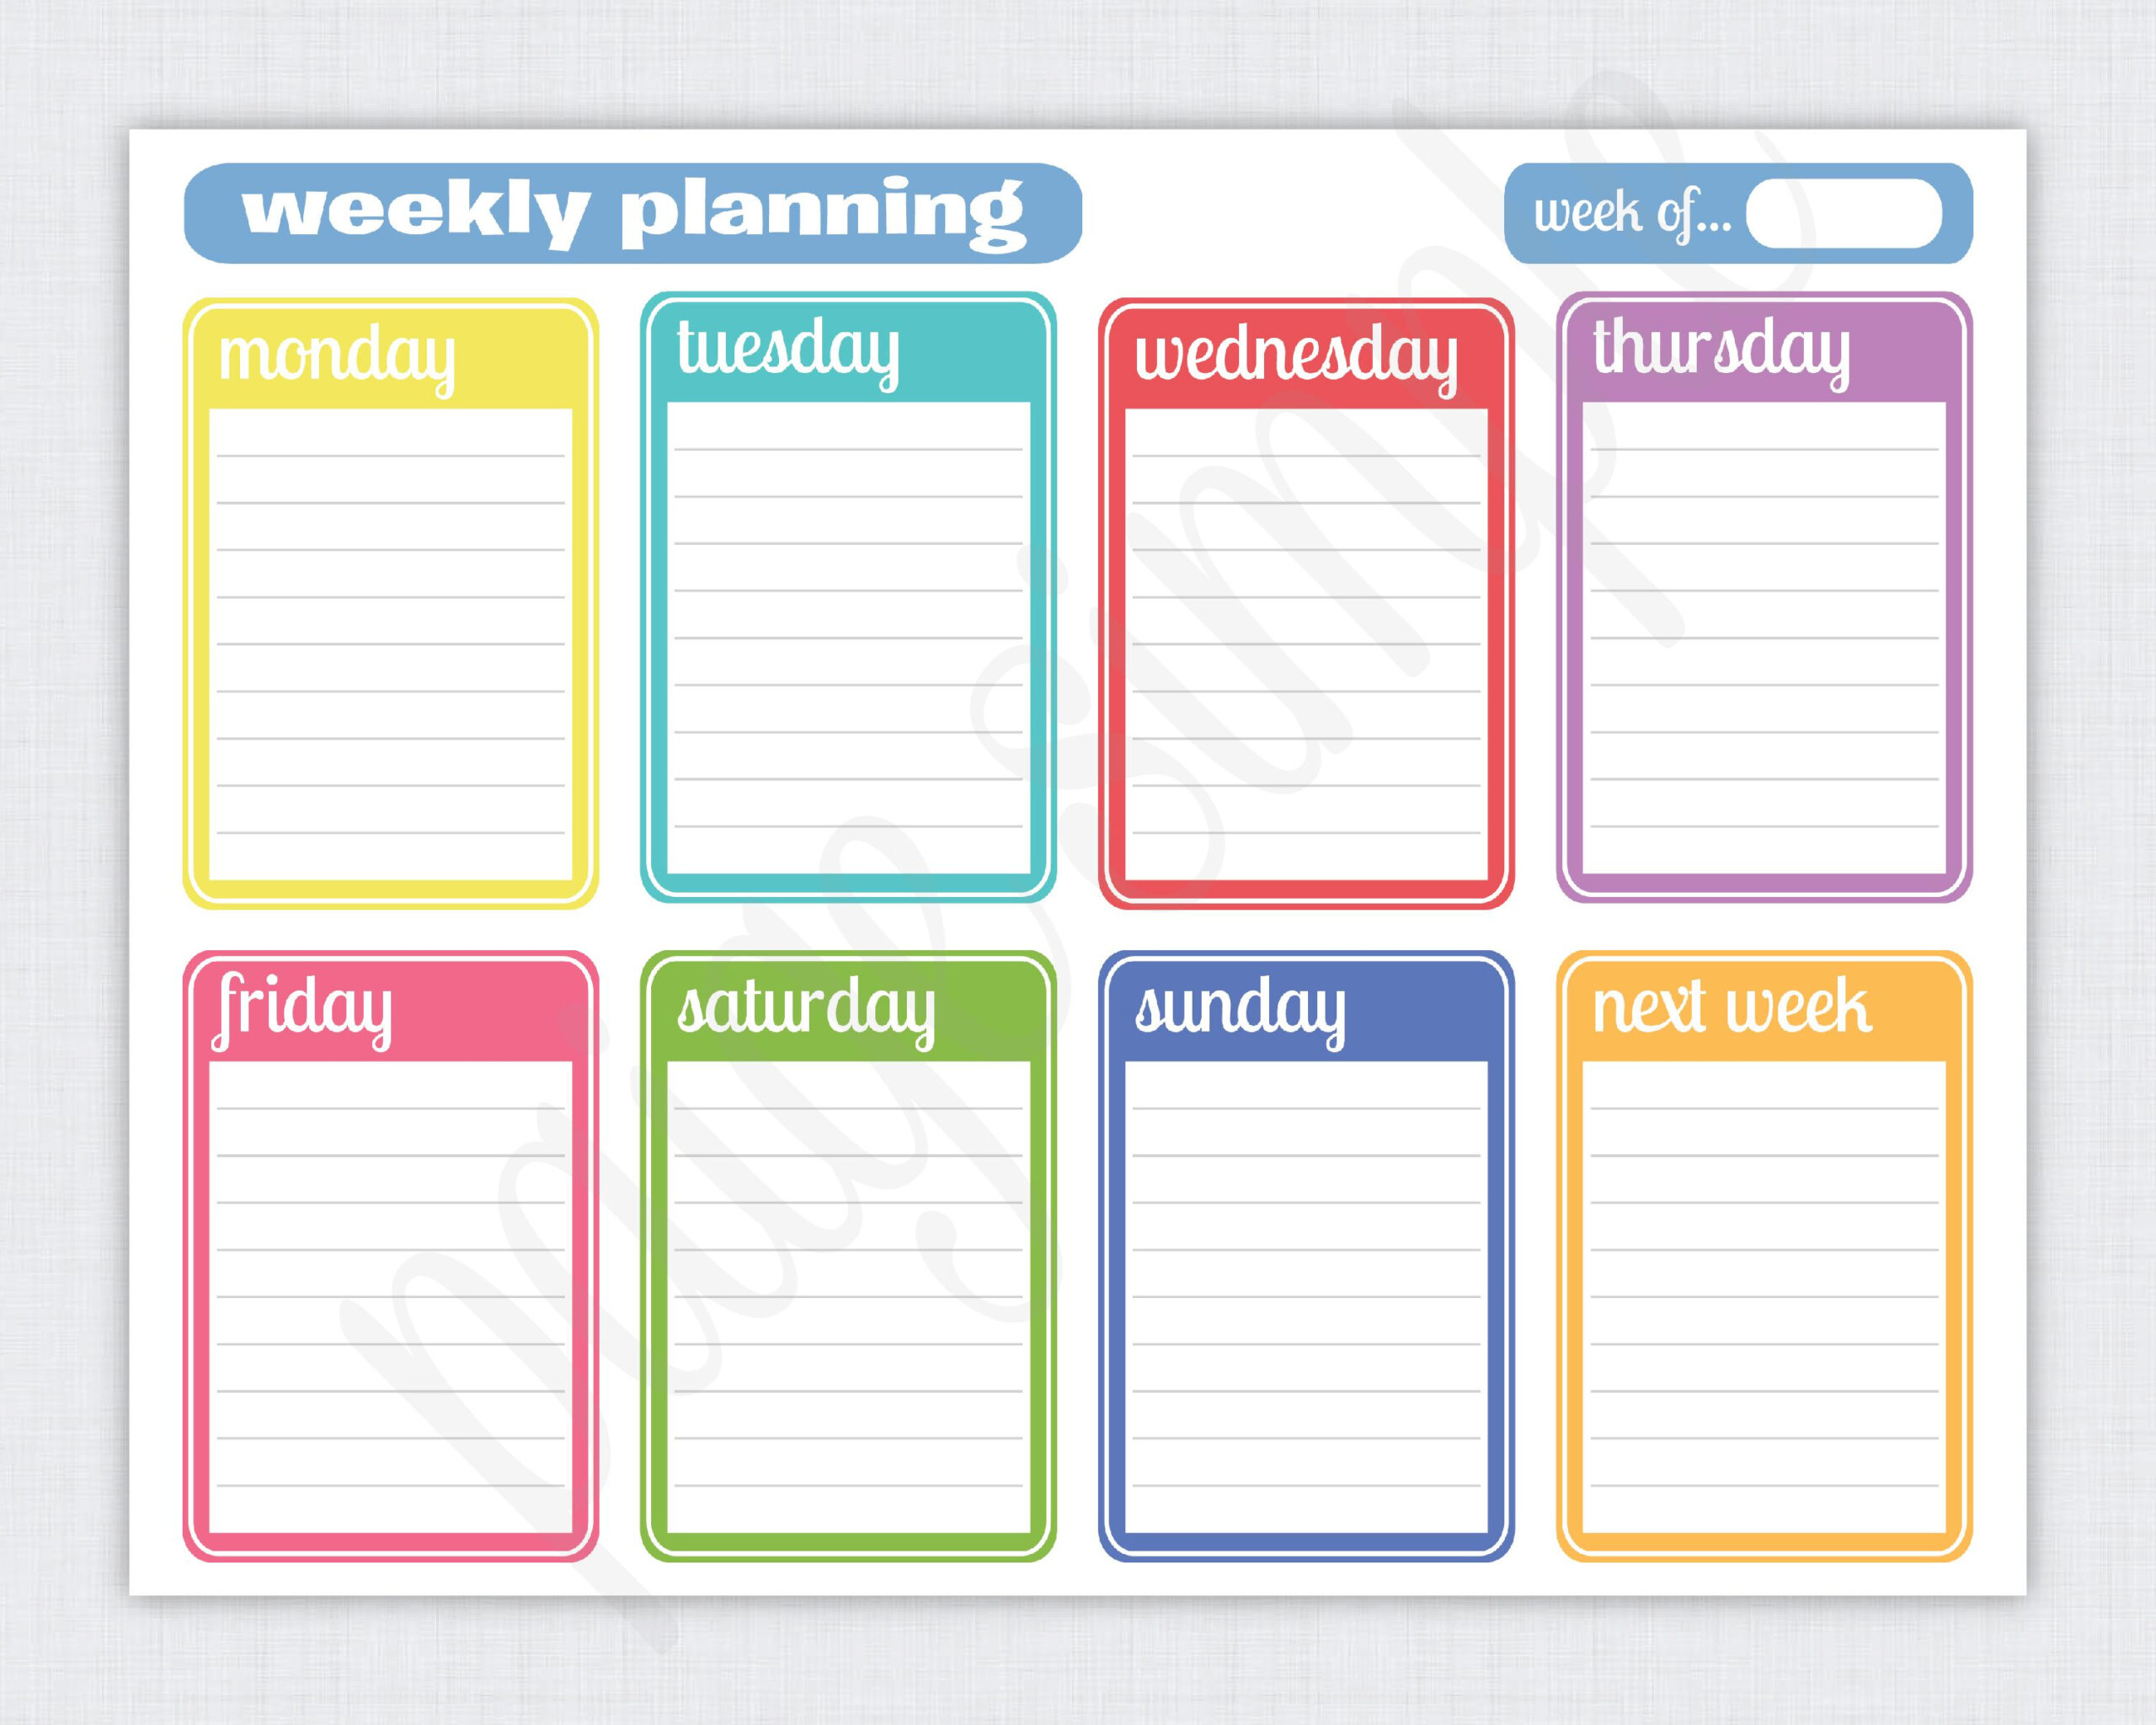 Free Printable Weekly Planner Weekly Planner Template Weekly Planner 